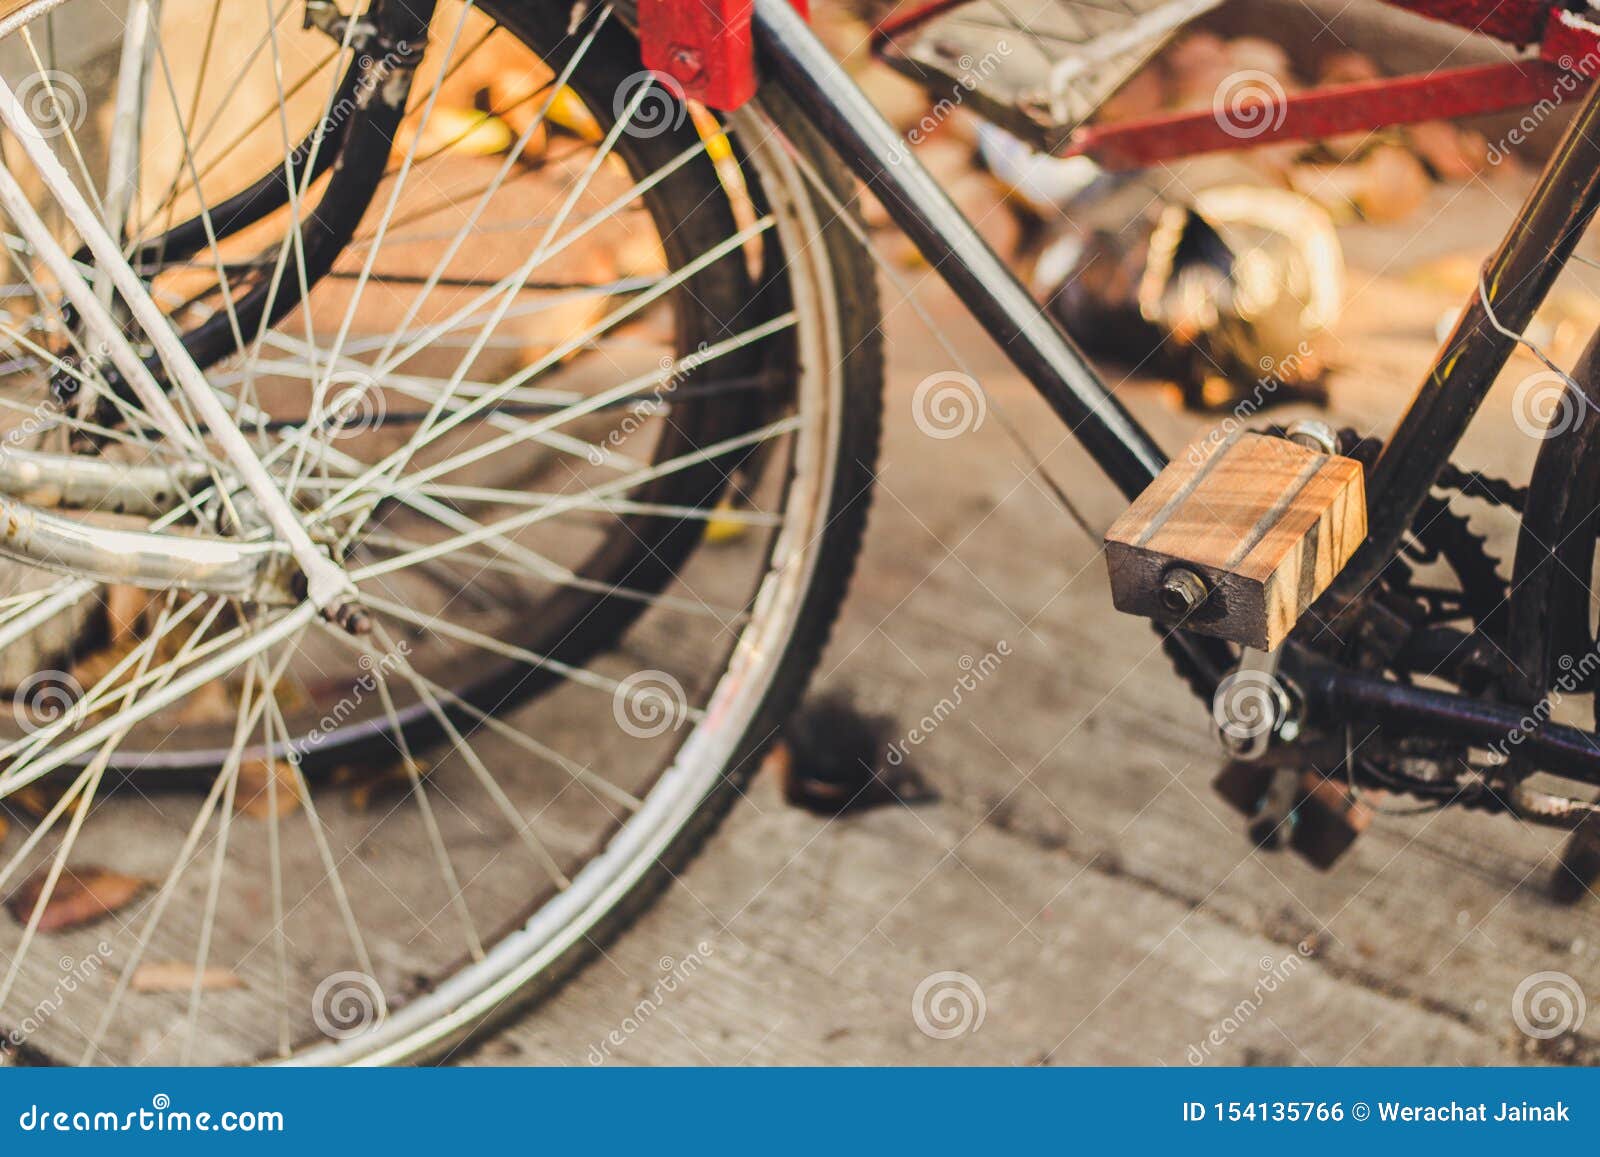 classic bike pedals